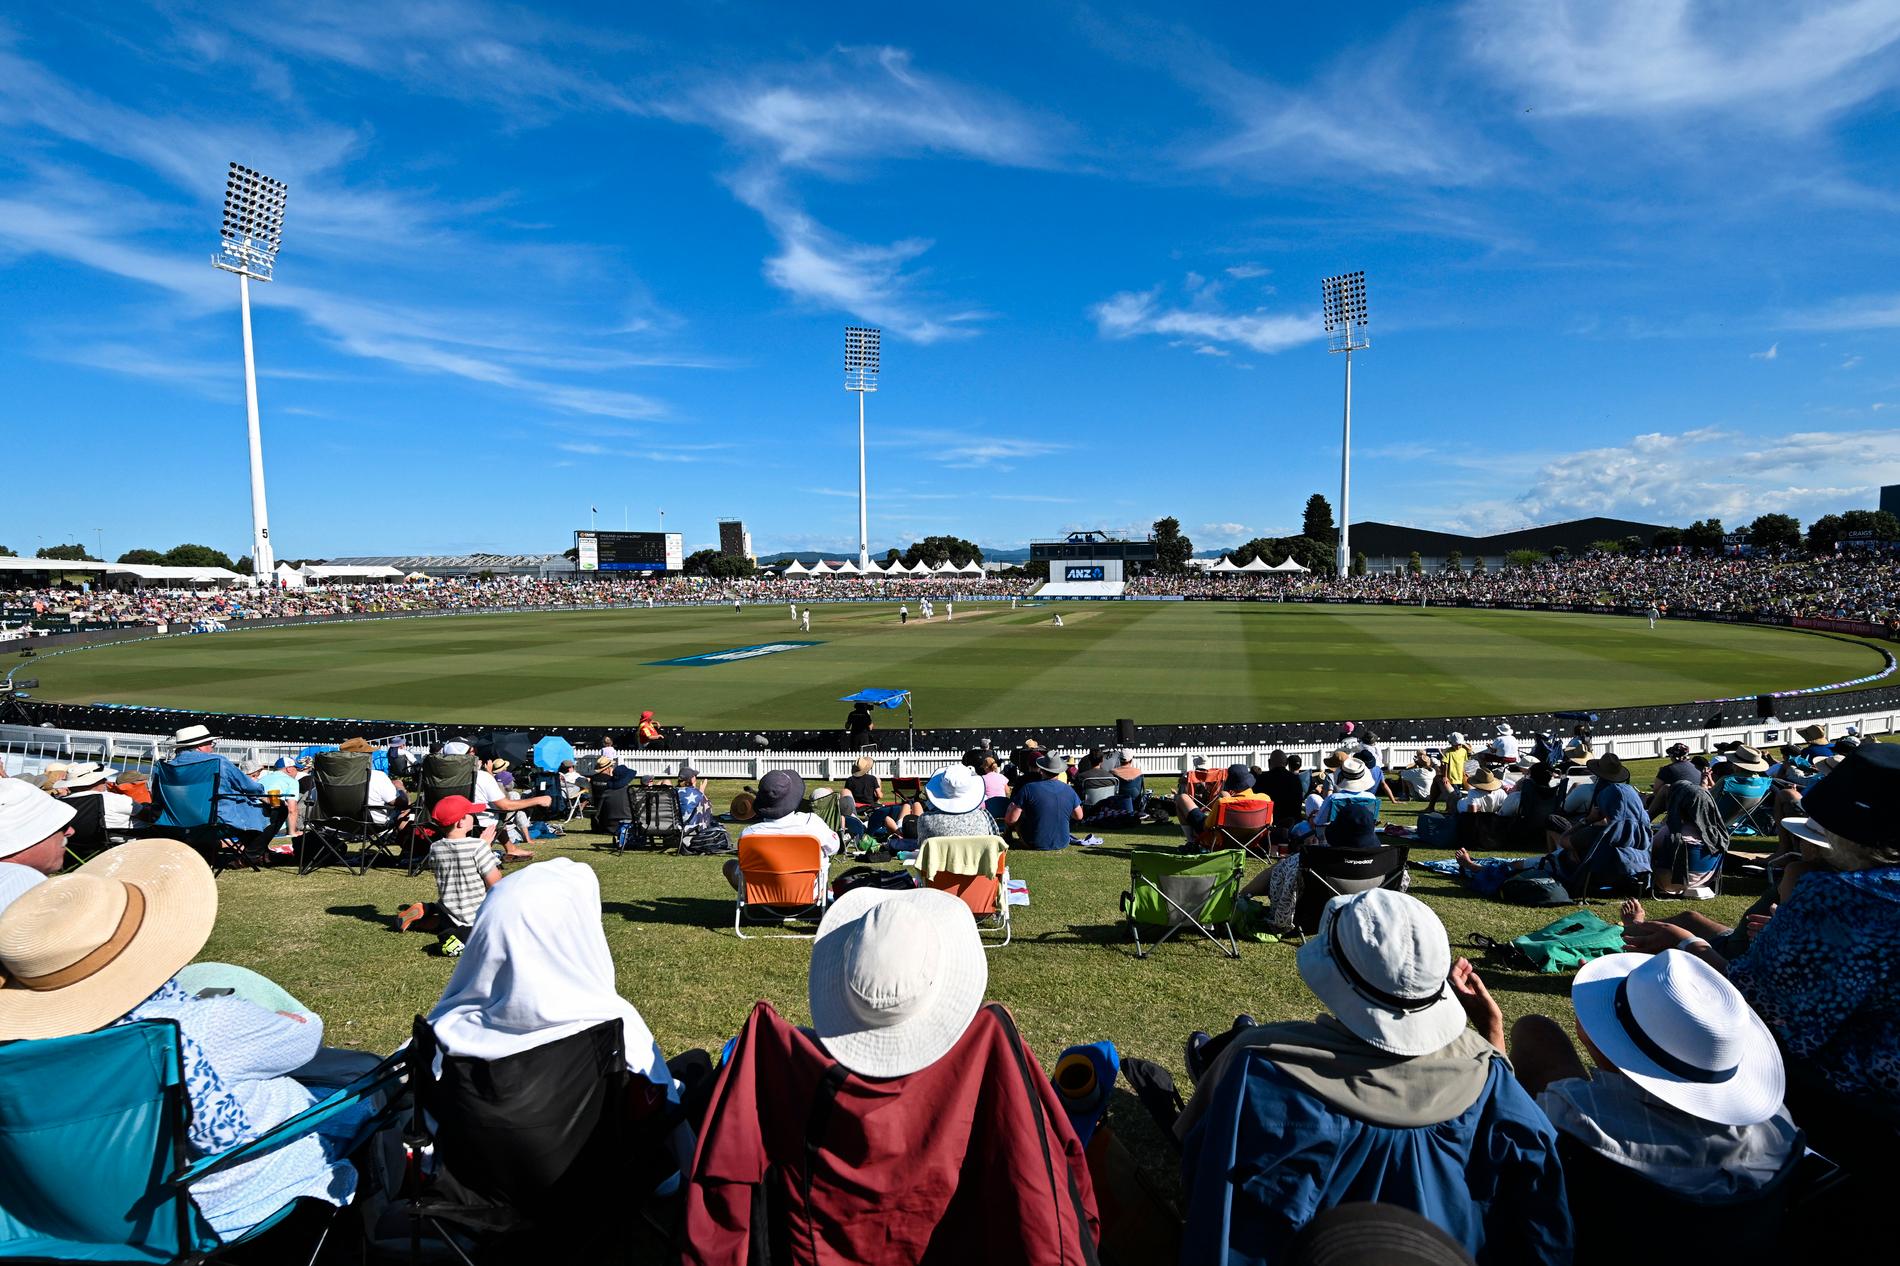 Cricketplanen Bay Oval i Tauranga, Nya Zeeland. Arkivbild.